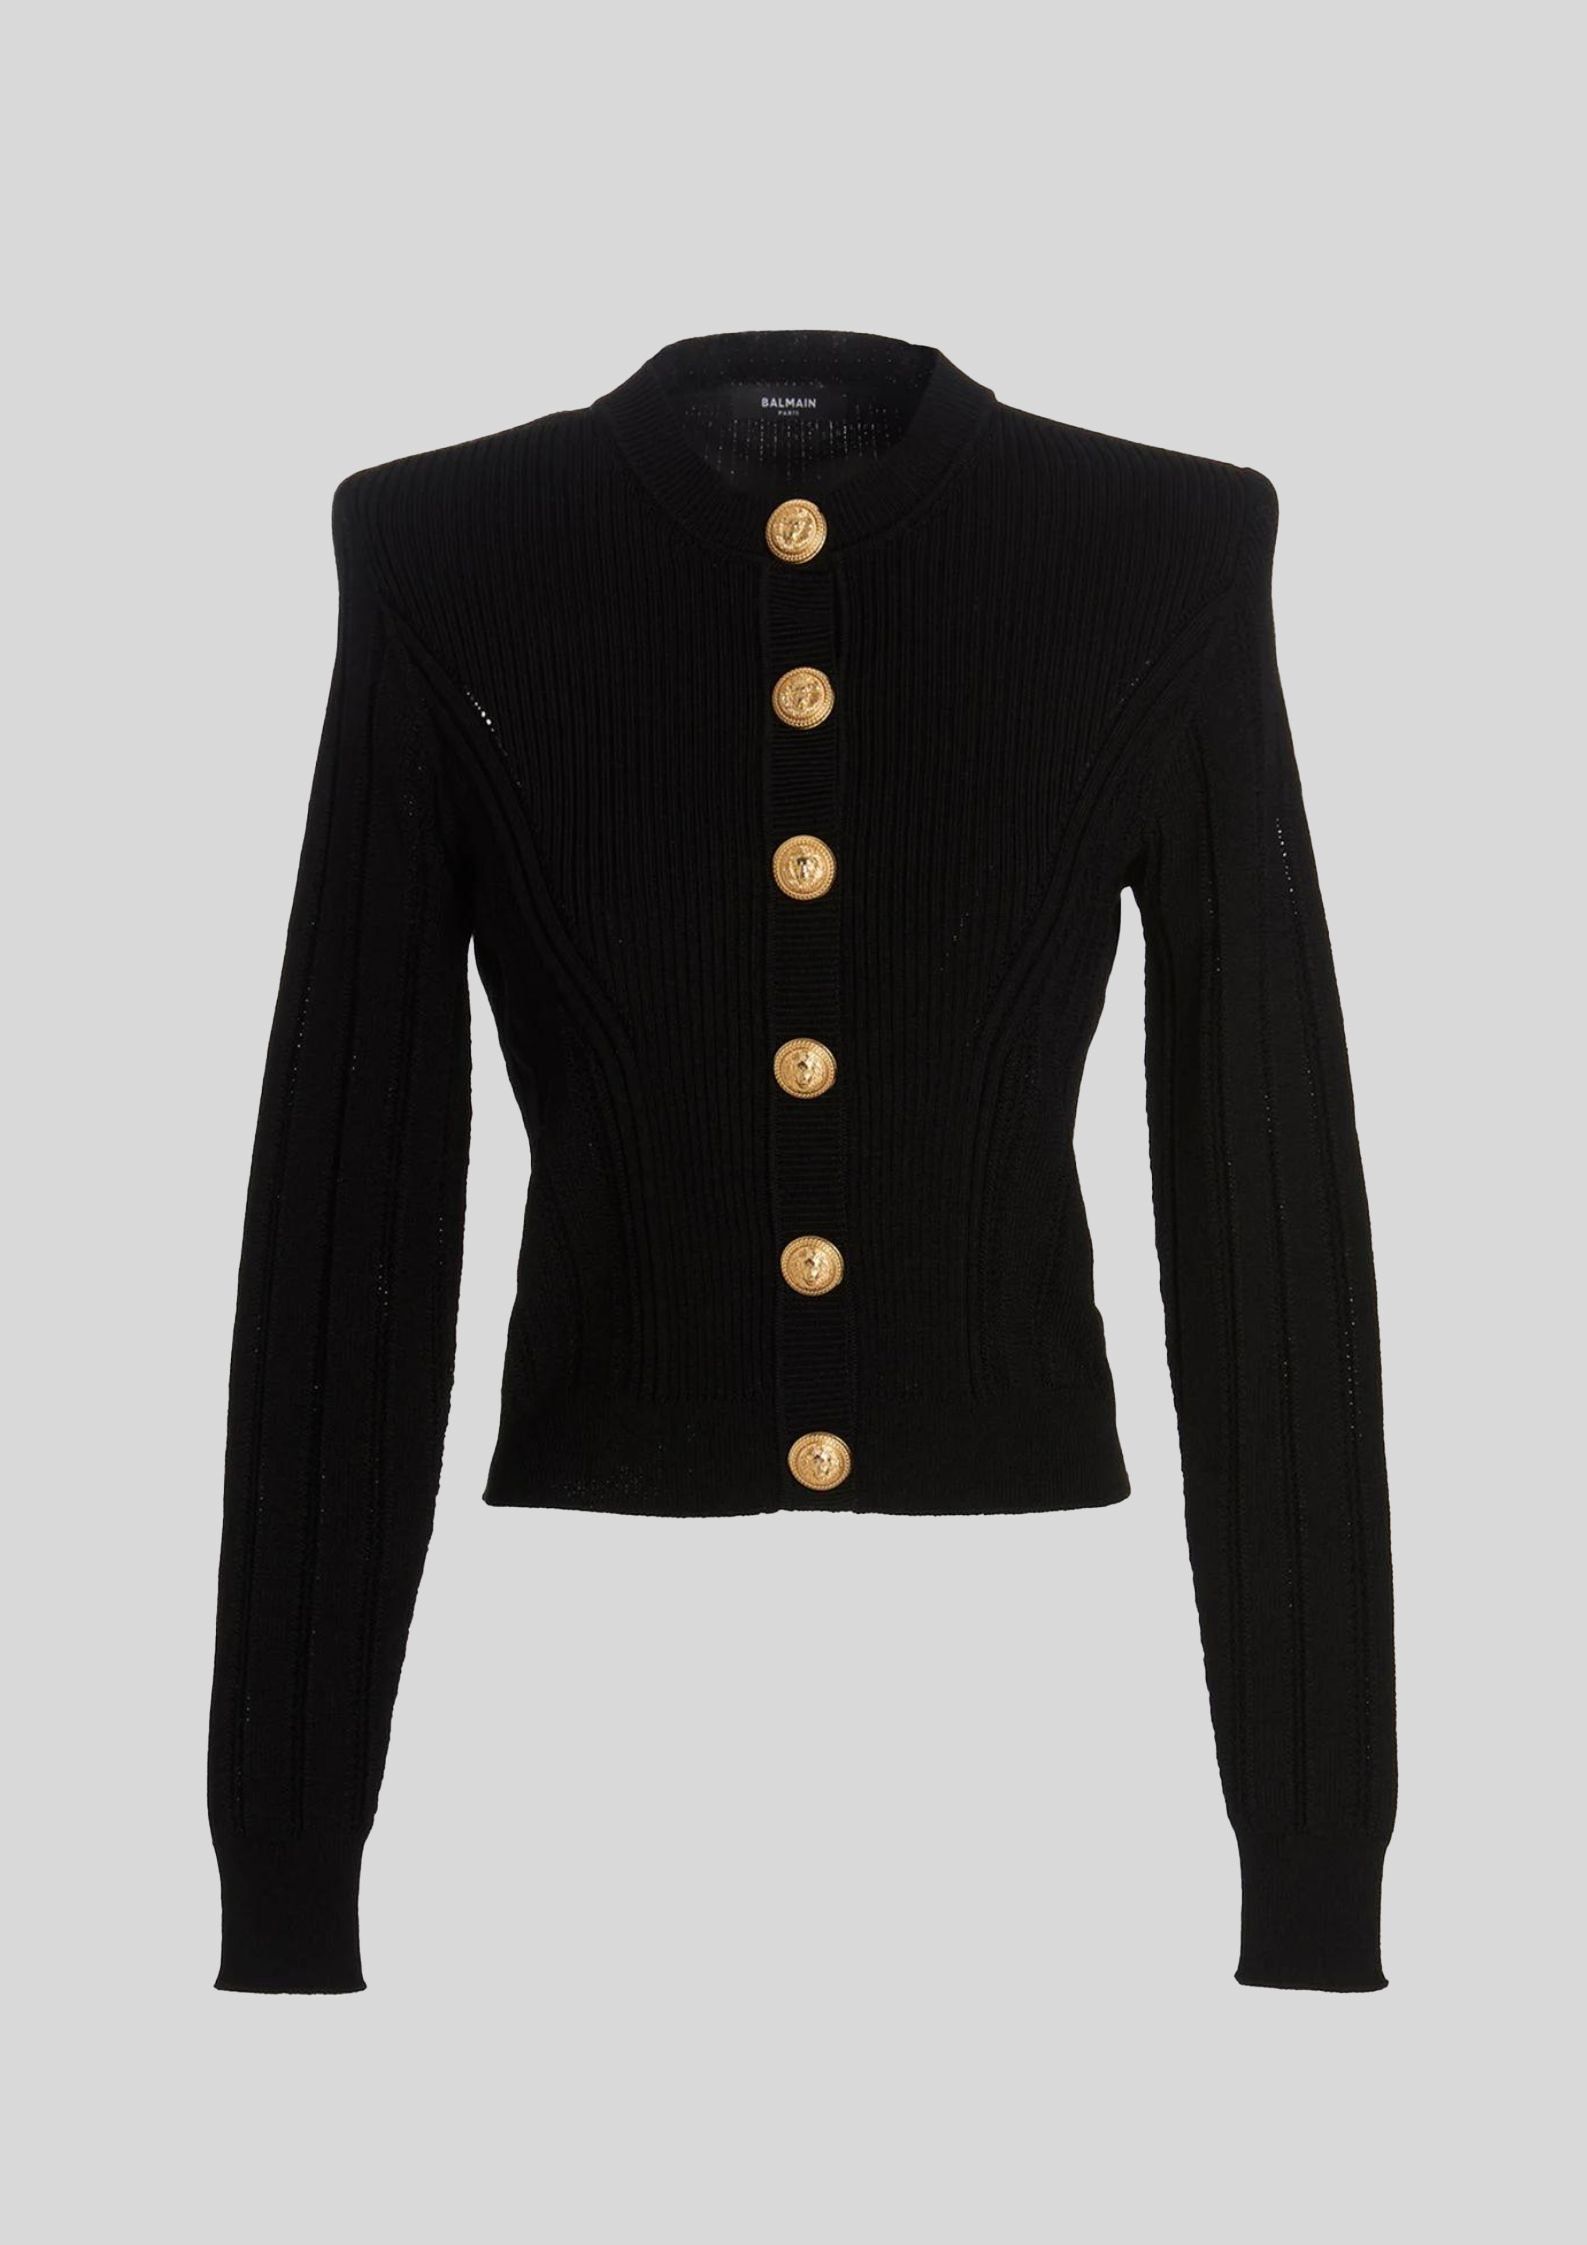 Balmain - Button Embellished Knit Black Cardigan